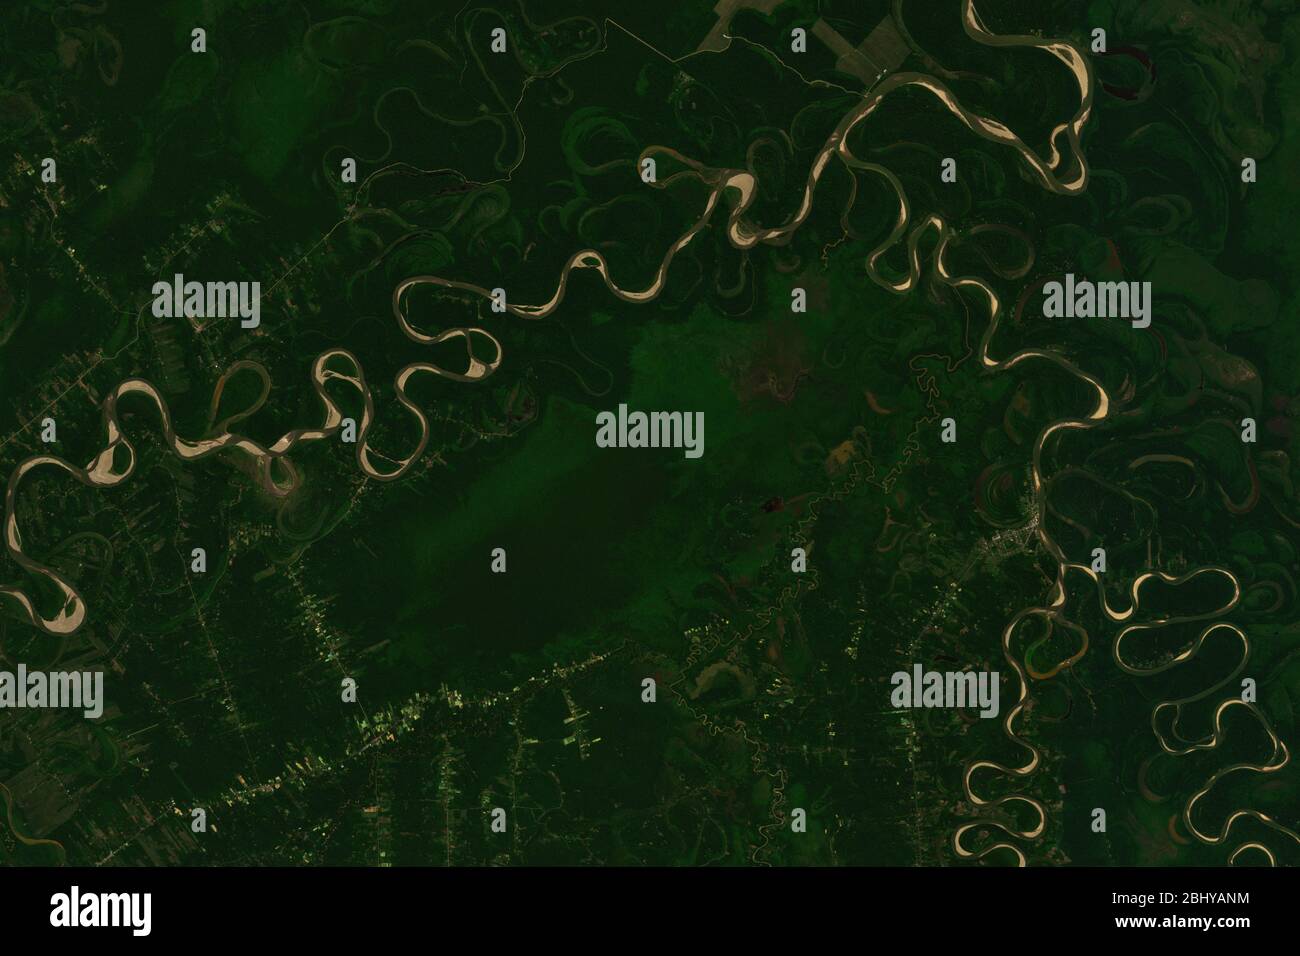 Image satellite haute résolution du paysage marécageux autour de la rivière Mamore en Bolivie - contient des données sentinelles Copernic modifiées (2020) Banque D'Images